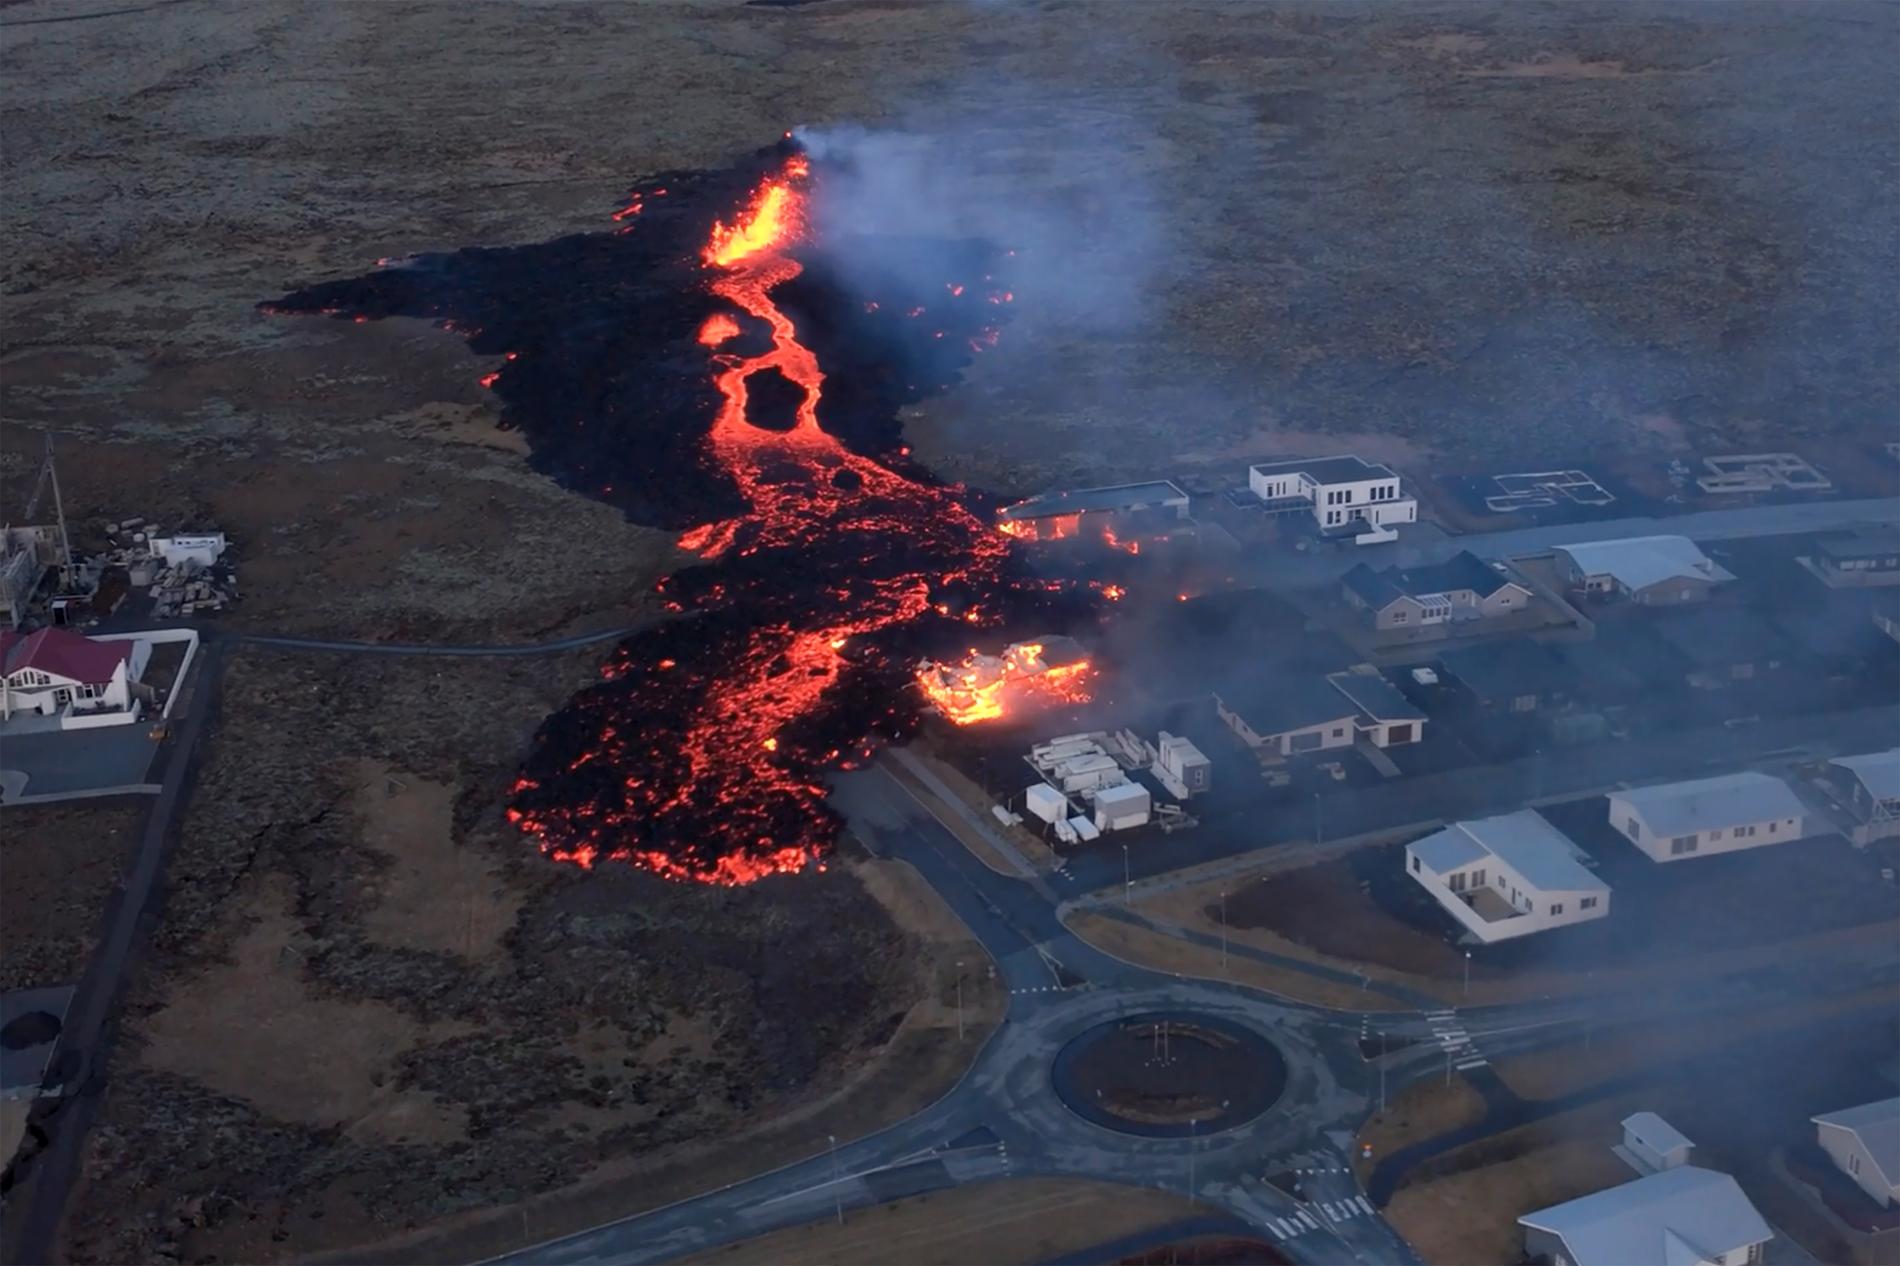 Vulkanutbrottet vid Grindavík är troligtvis bara det första av många i området under många år framöver, spår experter